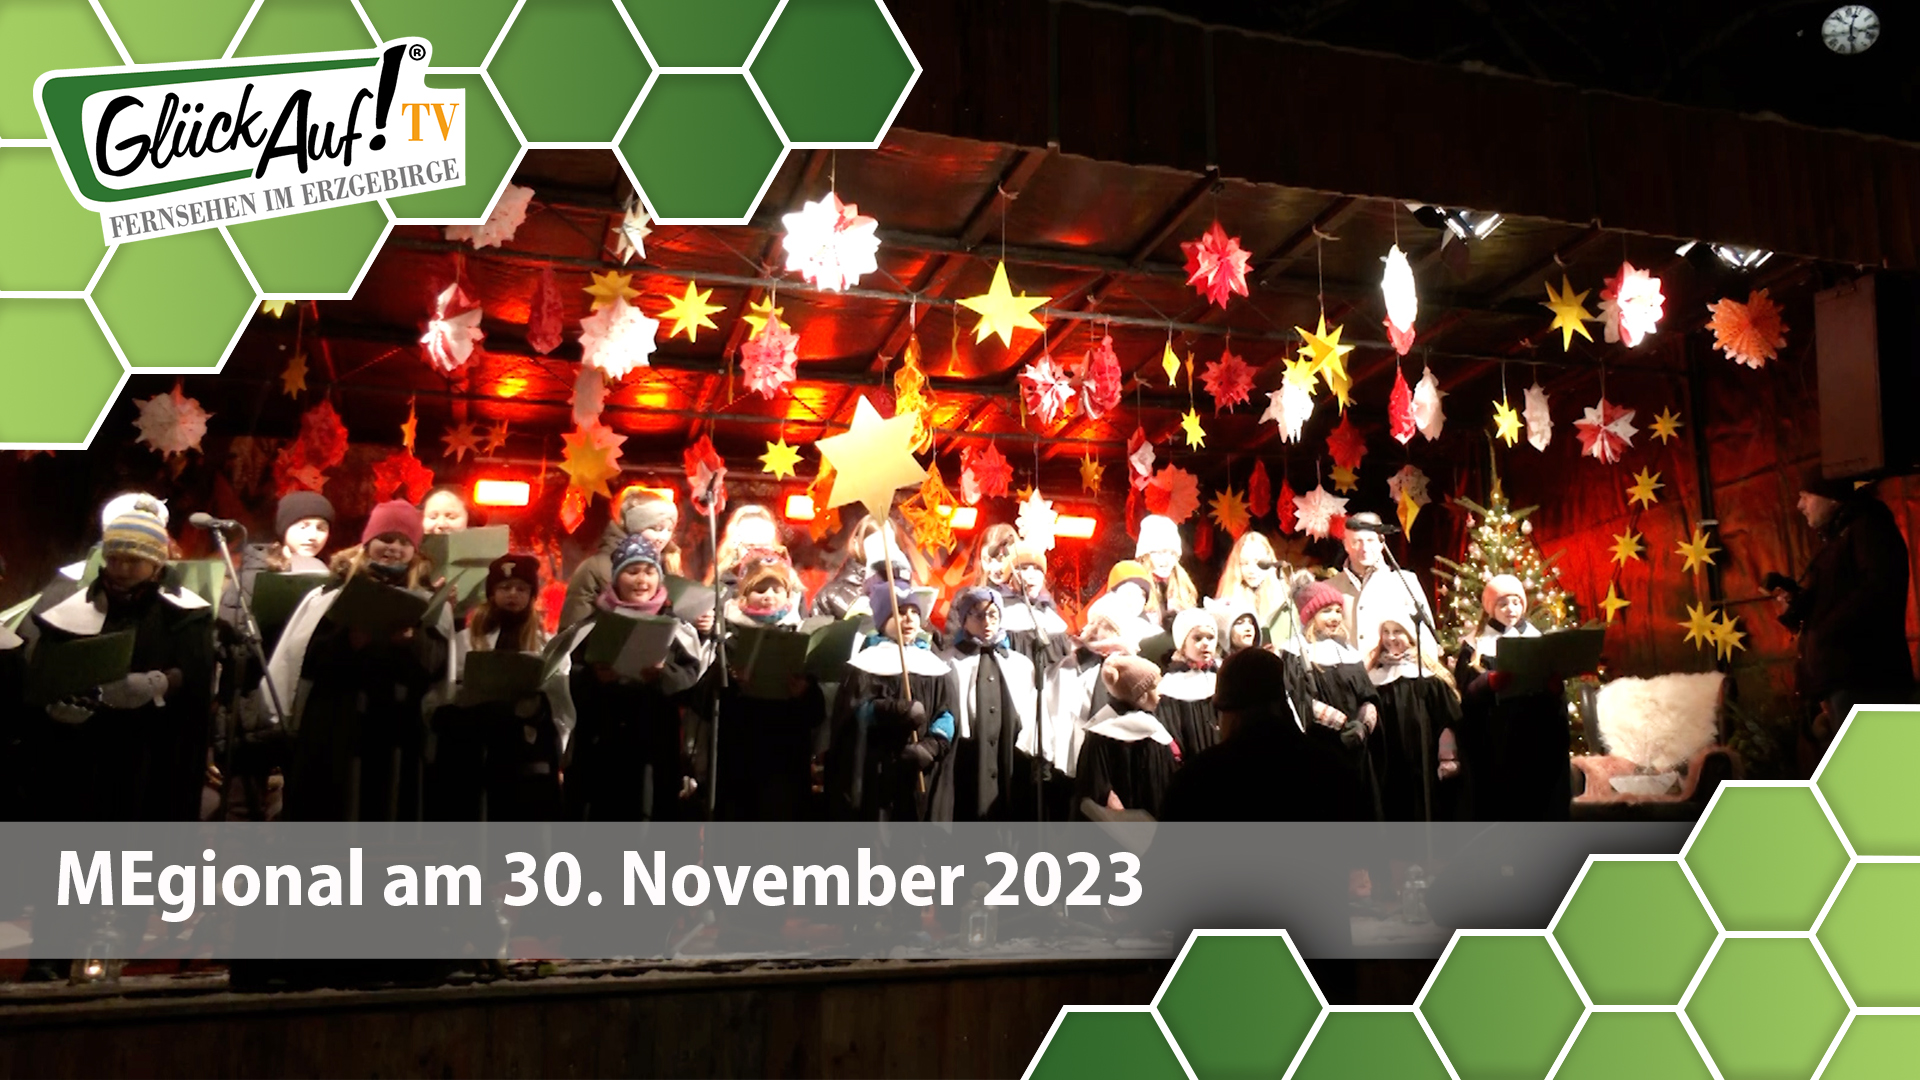 MEgional am 30. November 2023 mit der Weihnachtsmarkteröffnung in Marienberg